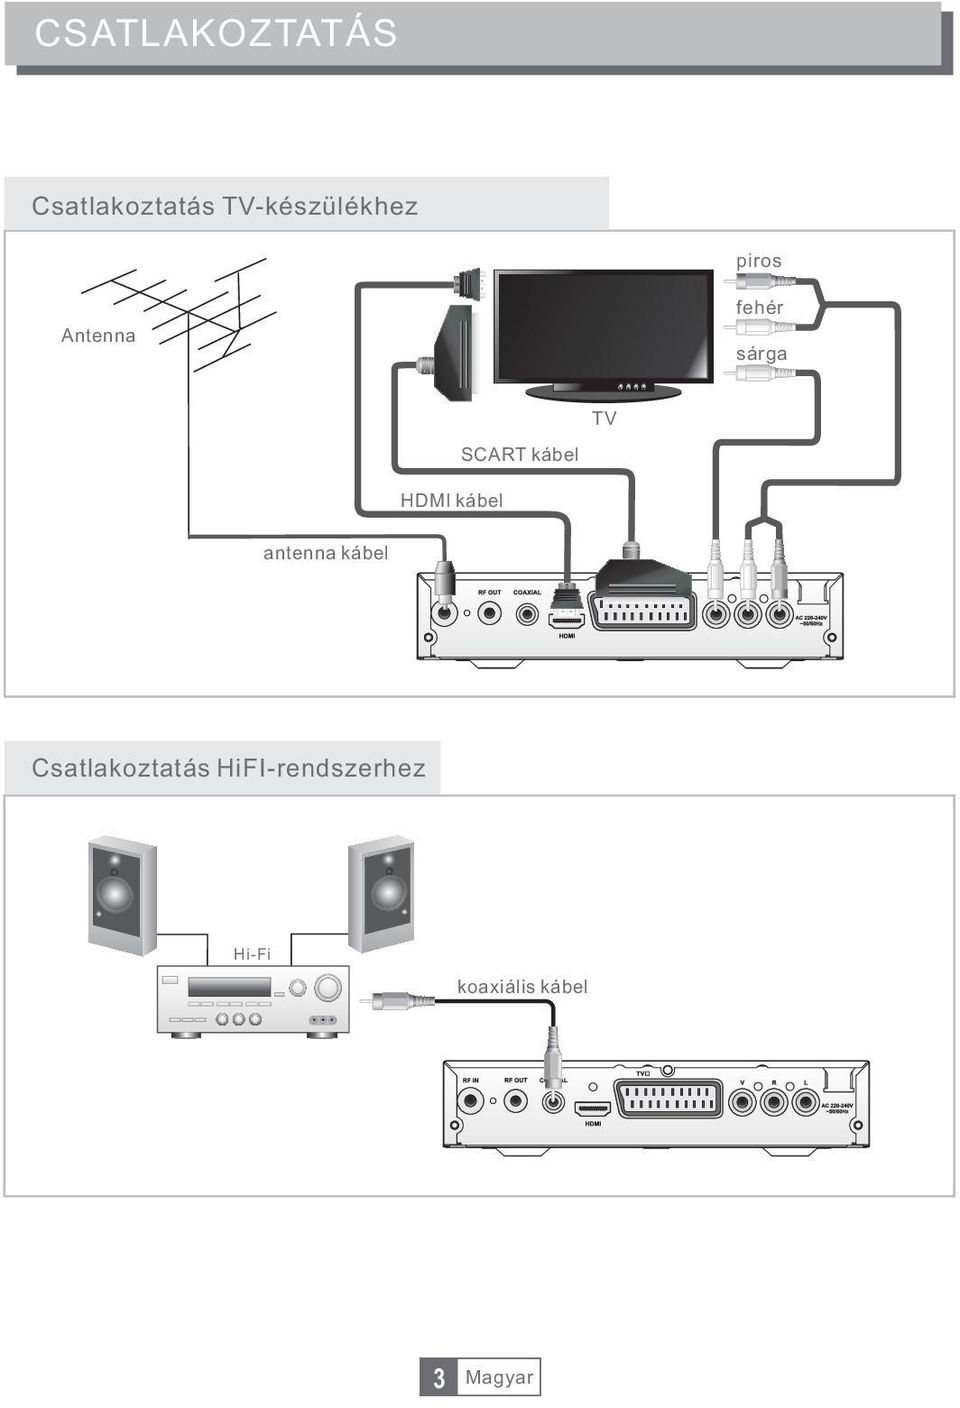 HDMI kábel SCART kábel antenna kábel